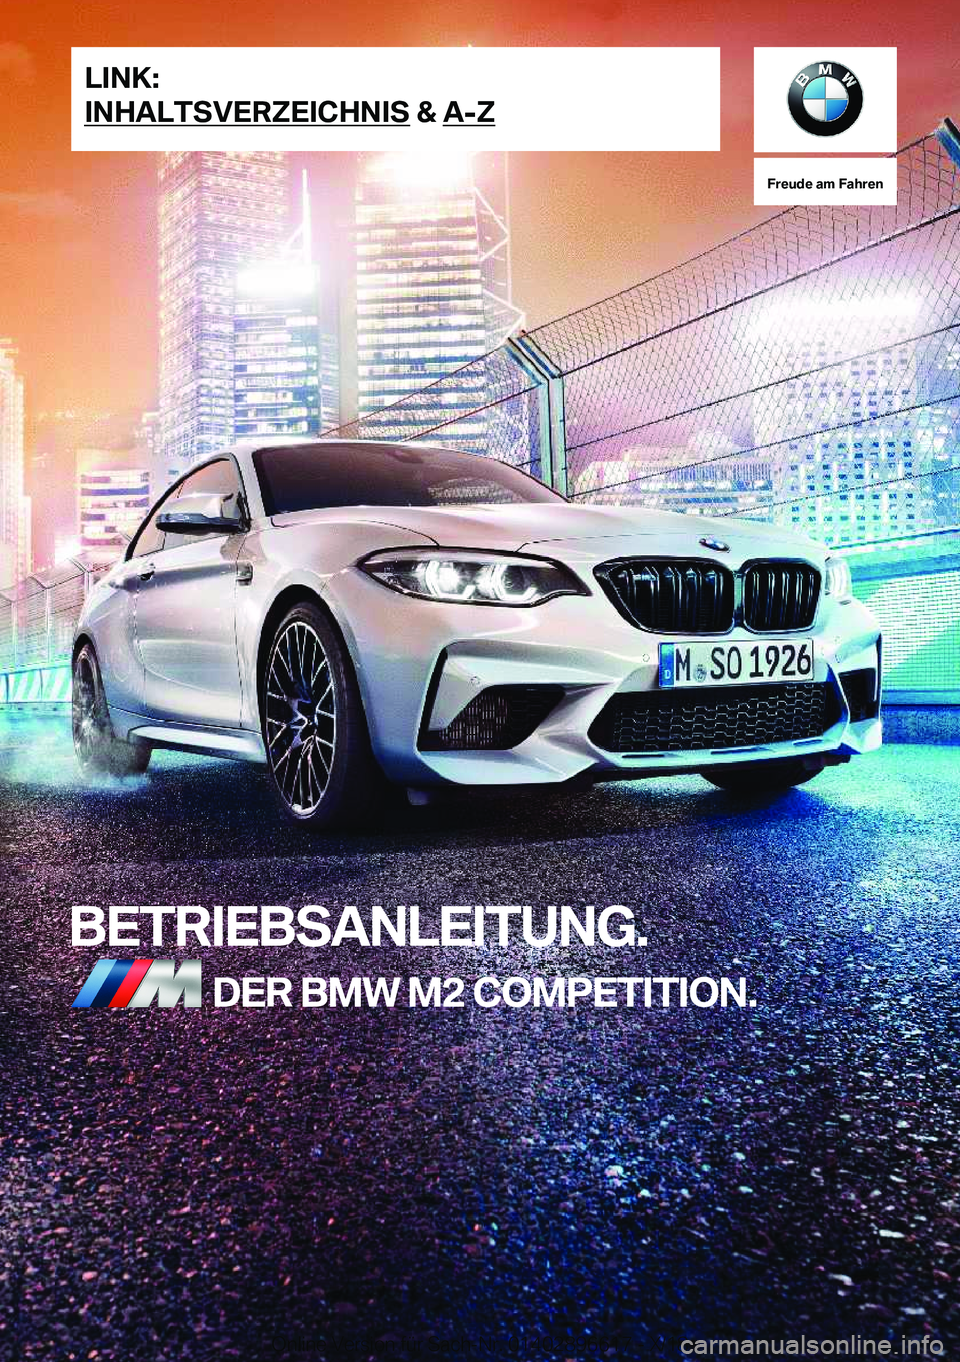 BMW M2 2019  Betriebsanleitungen (in German) �F�r�e�u�d�e��a�m��F�a�h�r�e�n
�B�E�T�R�I�E�B�S�A�N�L�E�I�T�U�N�G�.�D�E�R��B�M�W��M�2��C�O�M�P�E�T�I�T�I�O�N�.�L�I�N�K�:
�I�N�H�A�L�T�S�V�E�R�;�E�I�C�H�N�I�S��&��A�-�;�O�n�l�i�n�e��V�e�r�s�i�o